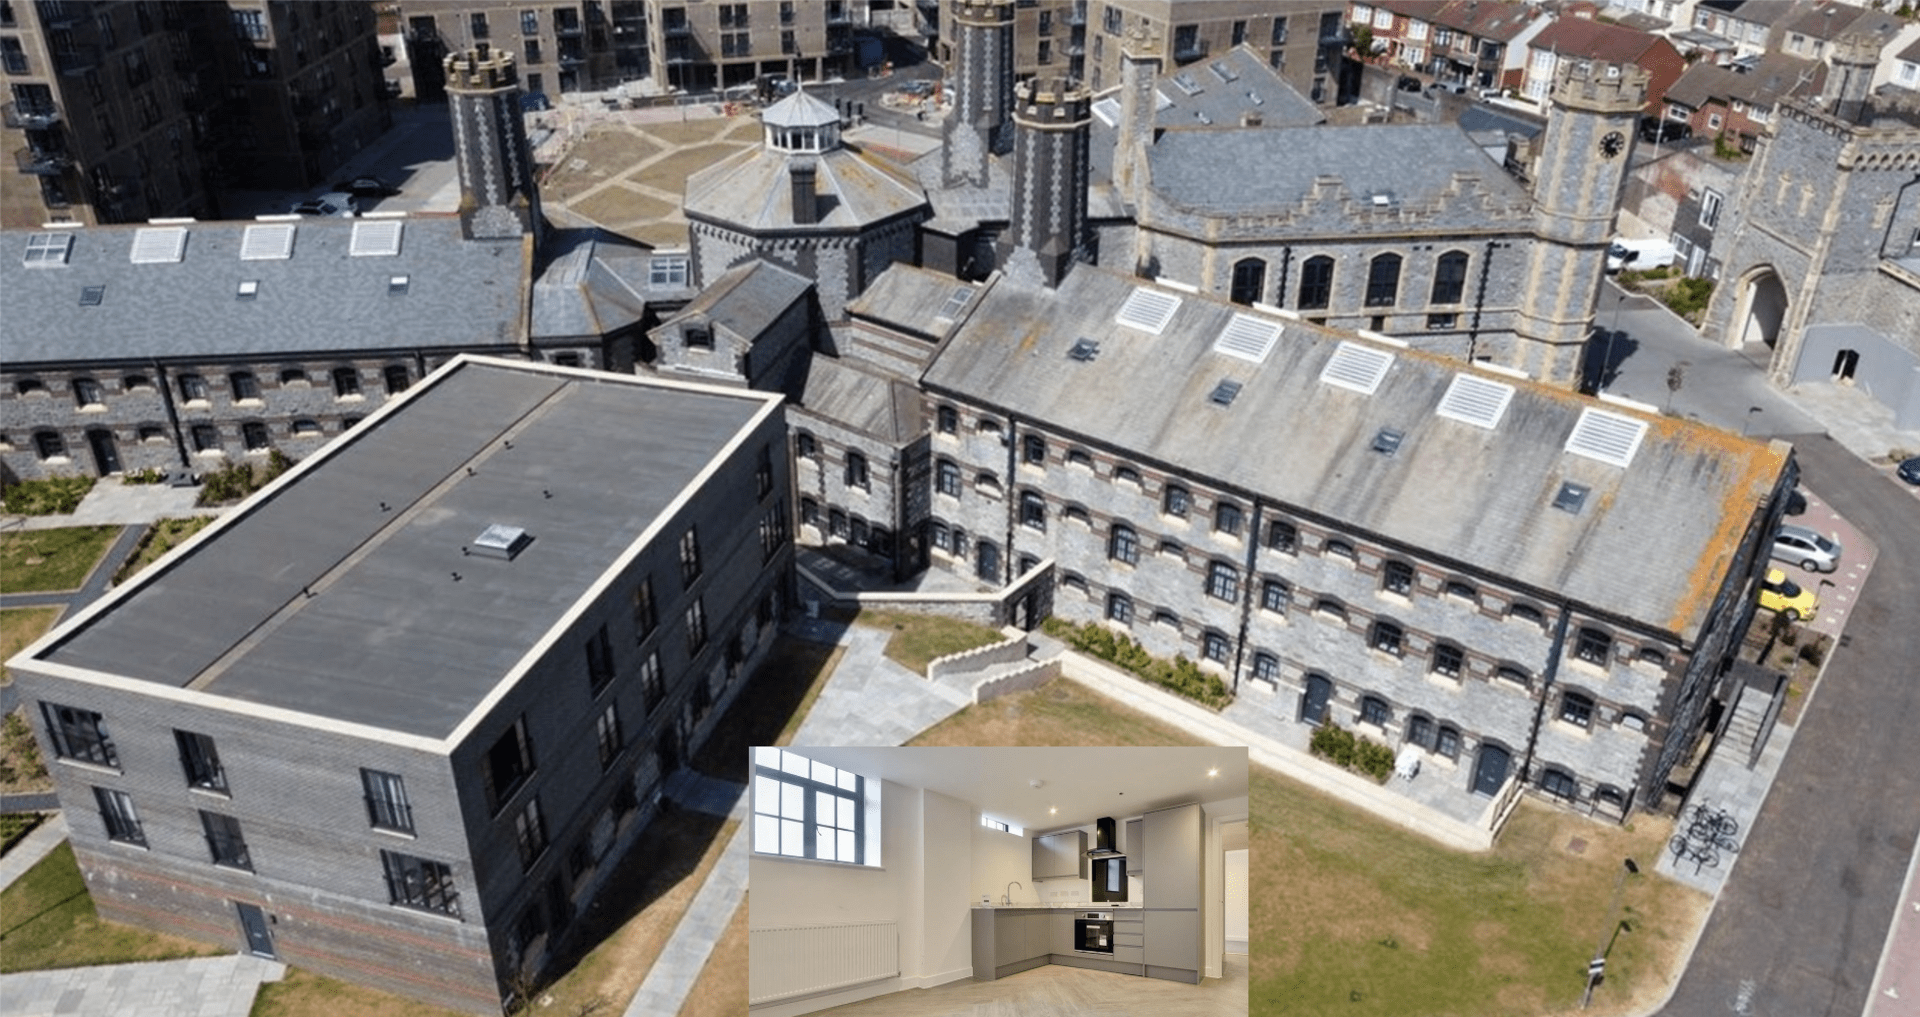 Z bývalé věznice Kingston v anglickém Portsmouthu, která sloužila do roku 2013 pro doživotně uvězněné zločince, je nyní moderní  bytový dům.